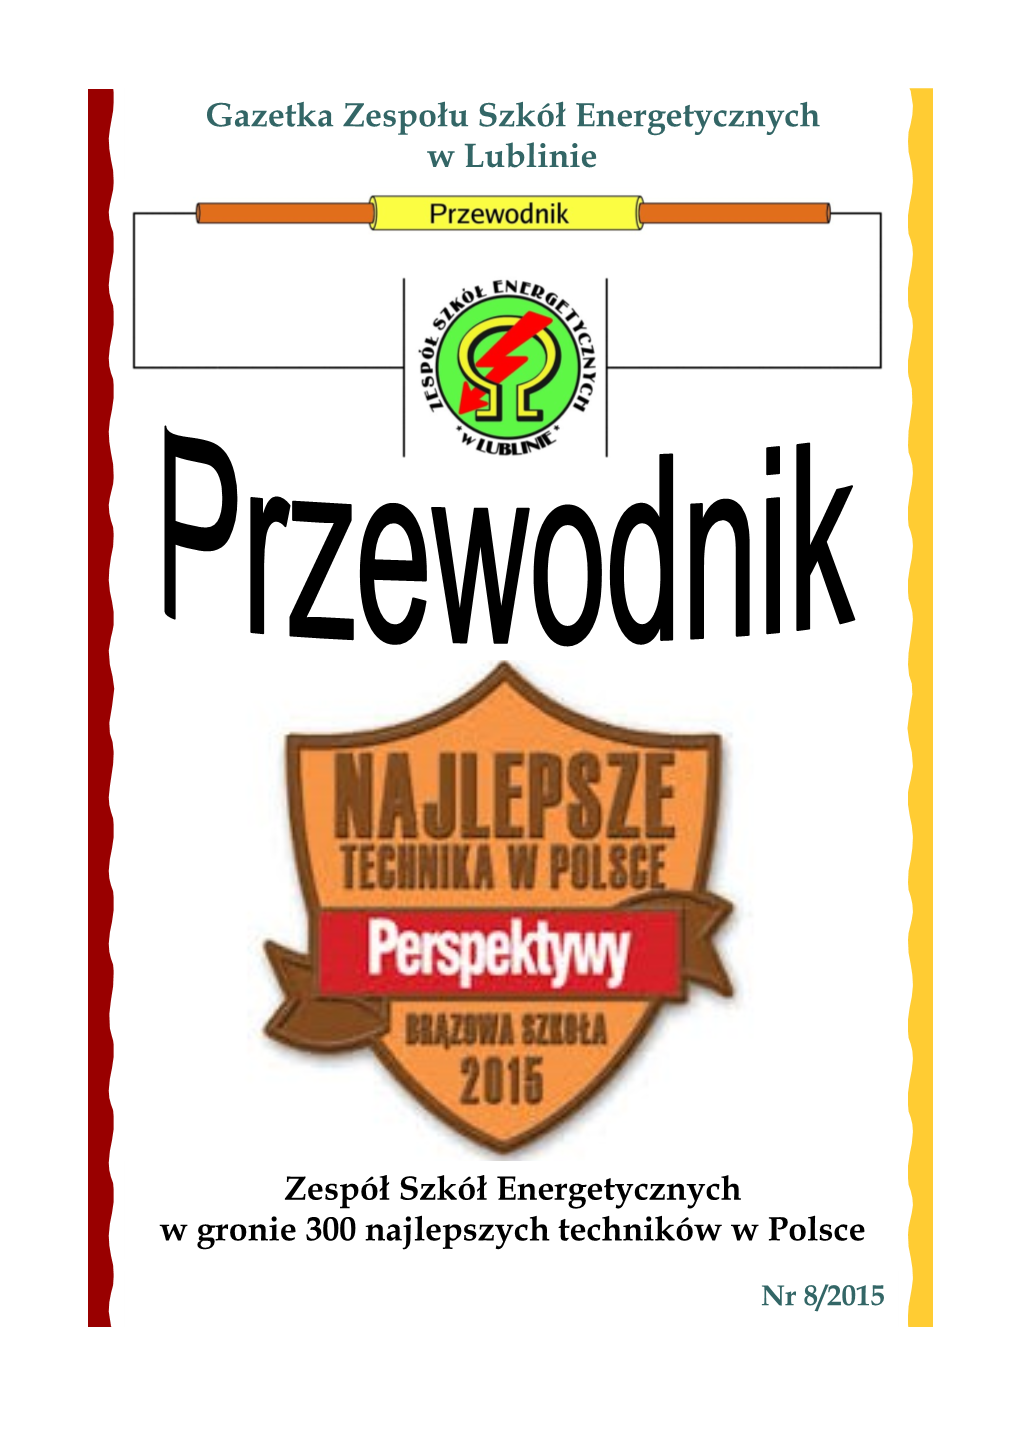 Gazetka Zespołu Szkół Energetycznych W Lublinie